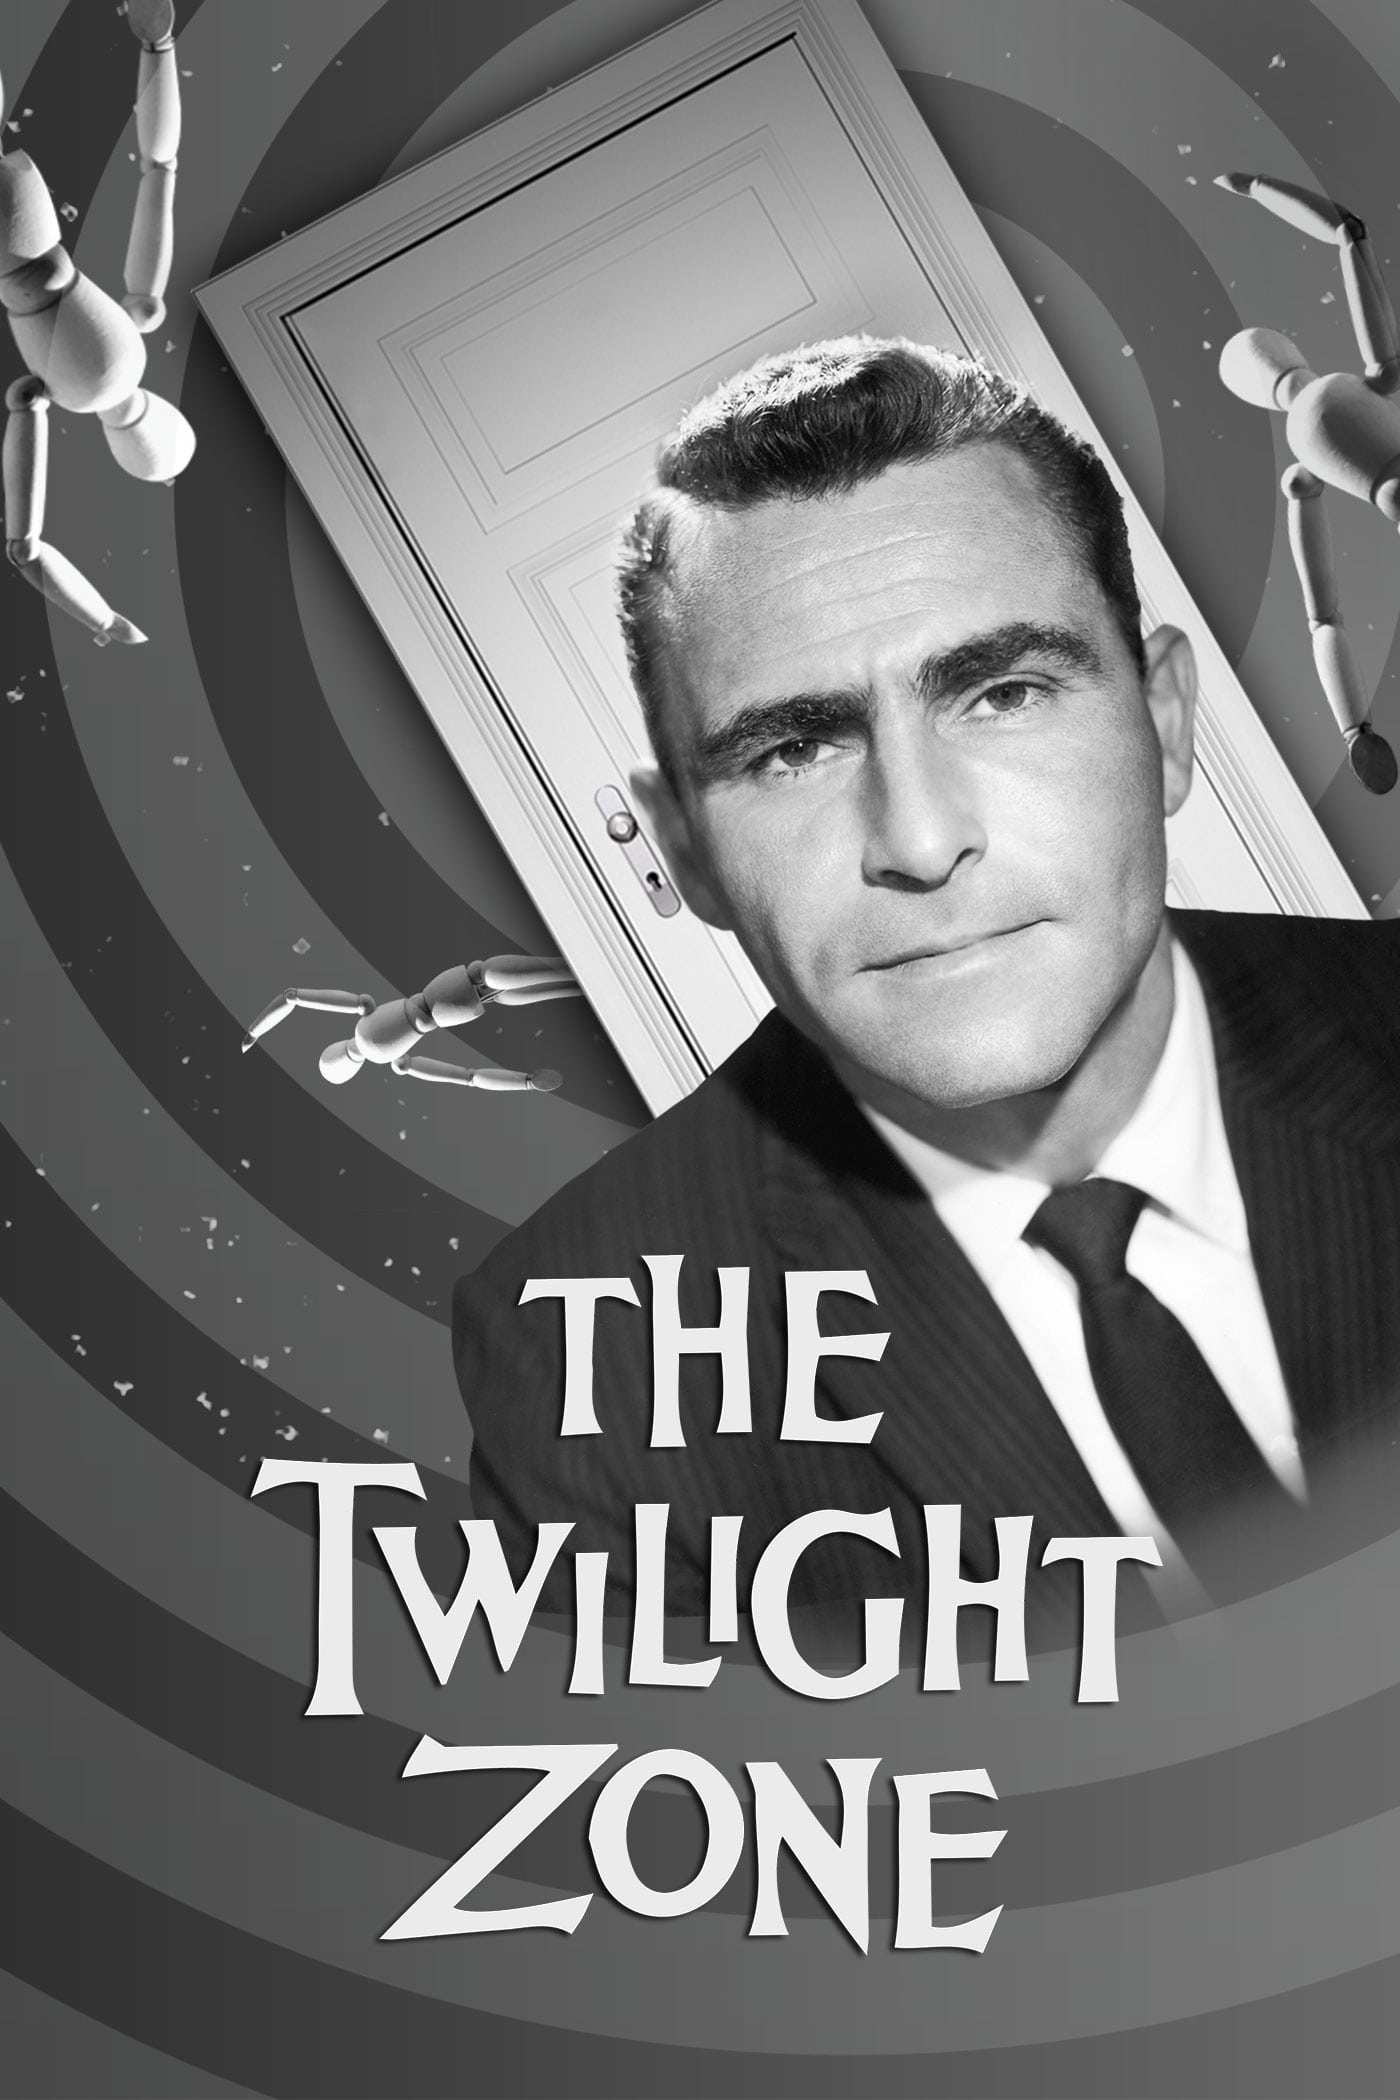 Twilight Zone - Unwahrscheinliche Geschichten